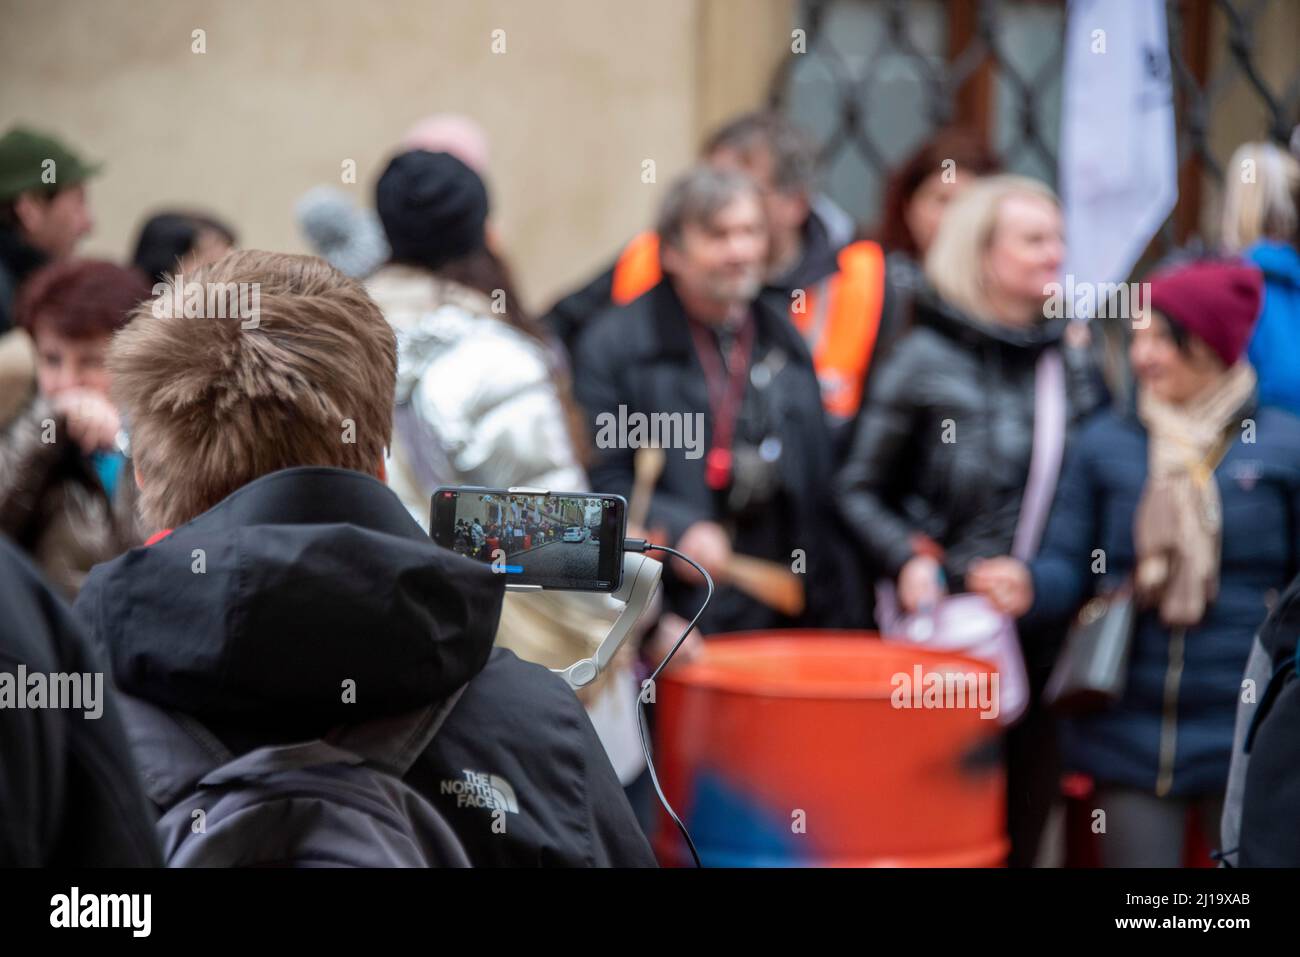 Protest against Corona measures, Prague, Czech Republic Stock Photo